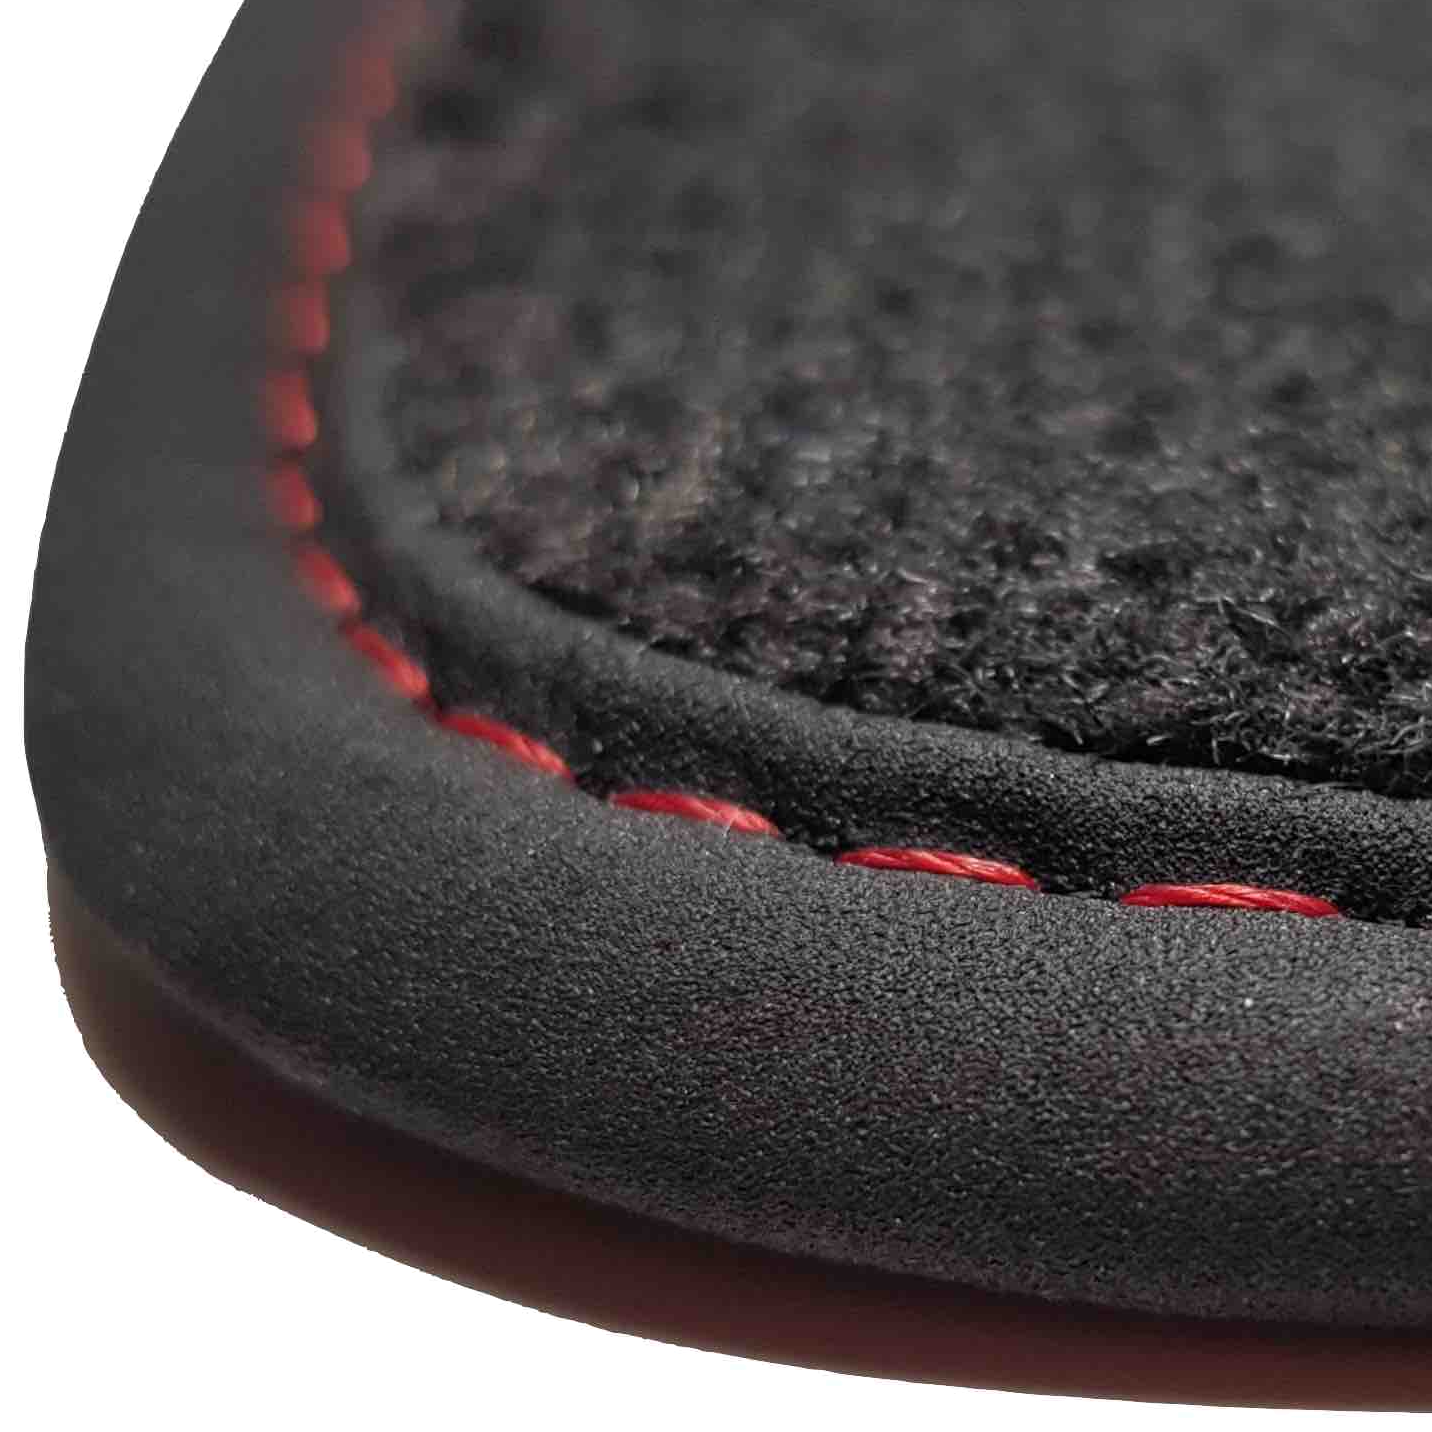 tapis RCZ 2010 2015 Peugeot prix discount livraison gratuite moquette noir bordure rouge